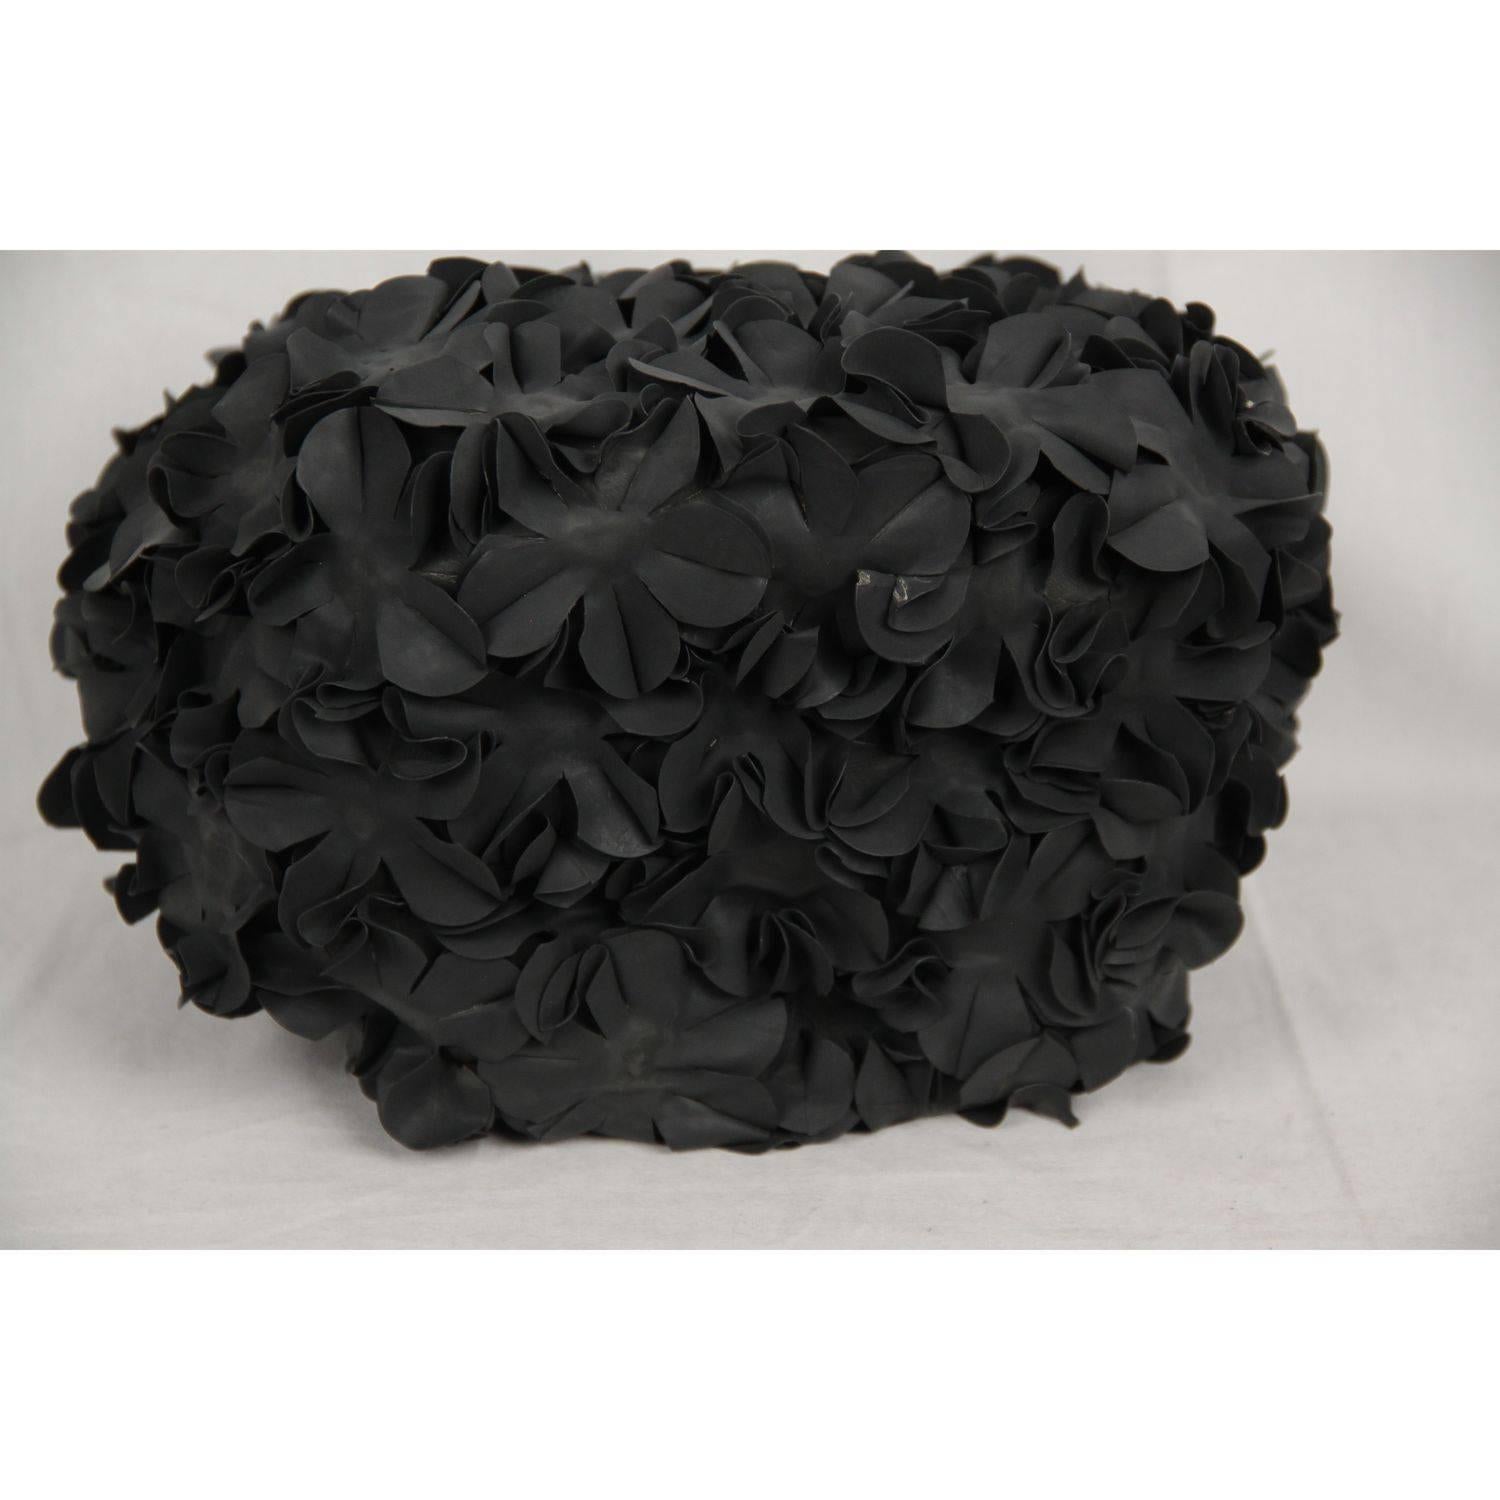 COMME DES GARCONS Black Rubber FLOWERS Applique TOTE BAG 2